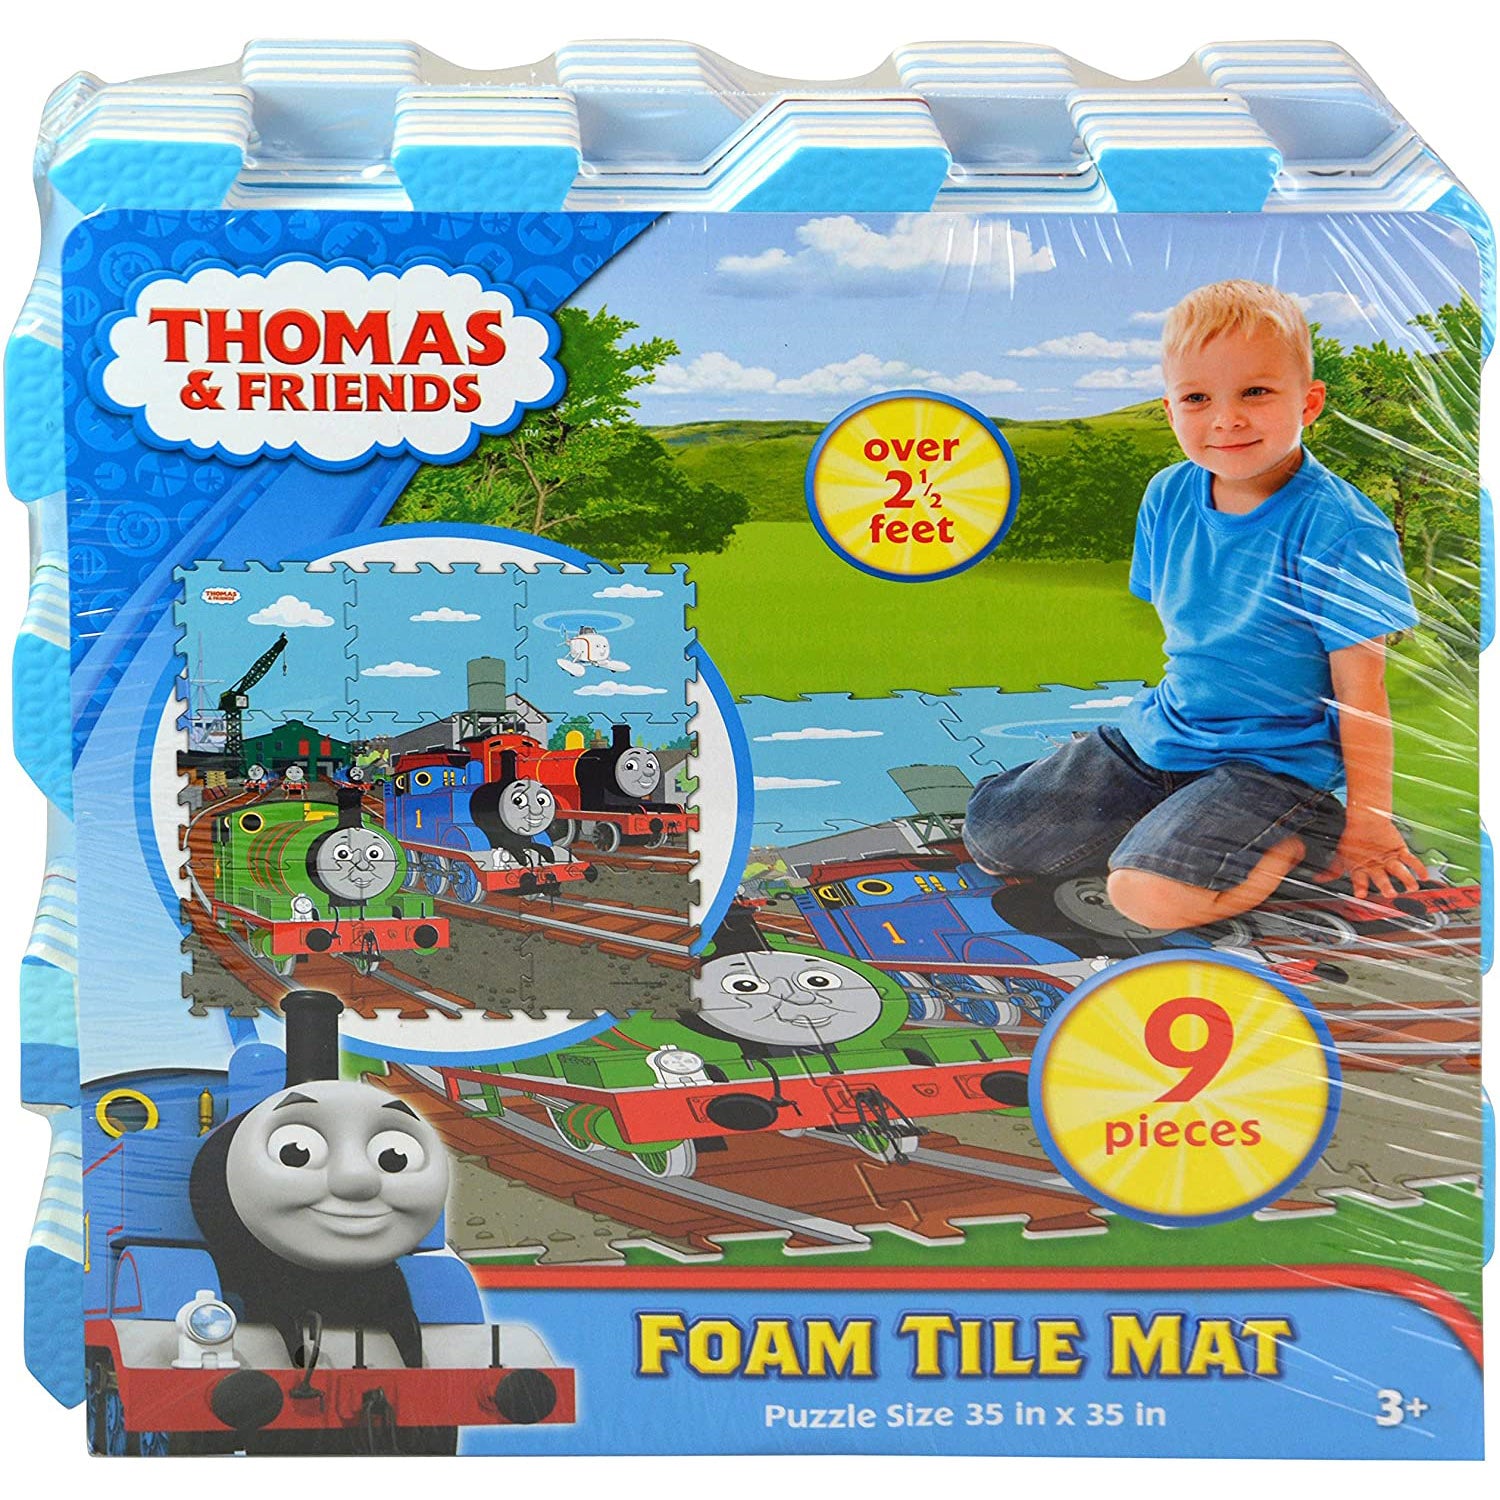 Thomas & Friends 9 Piece Foam Tile Mat